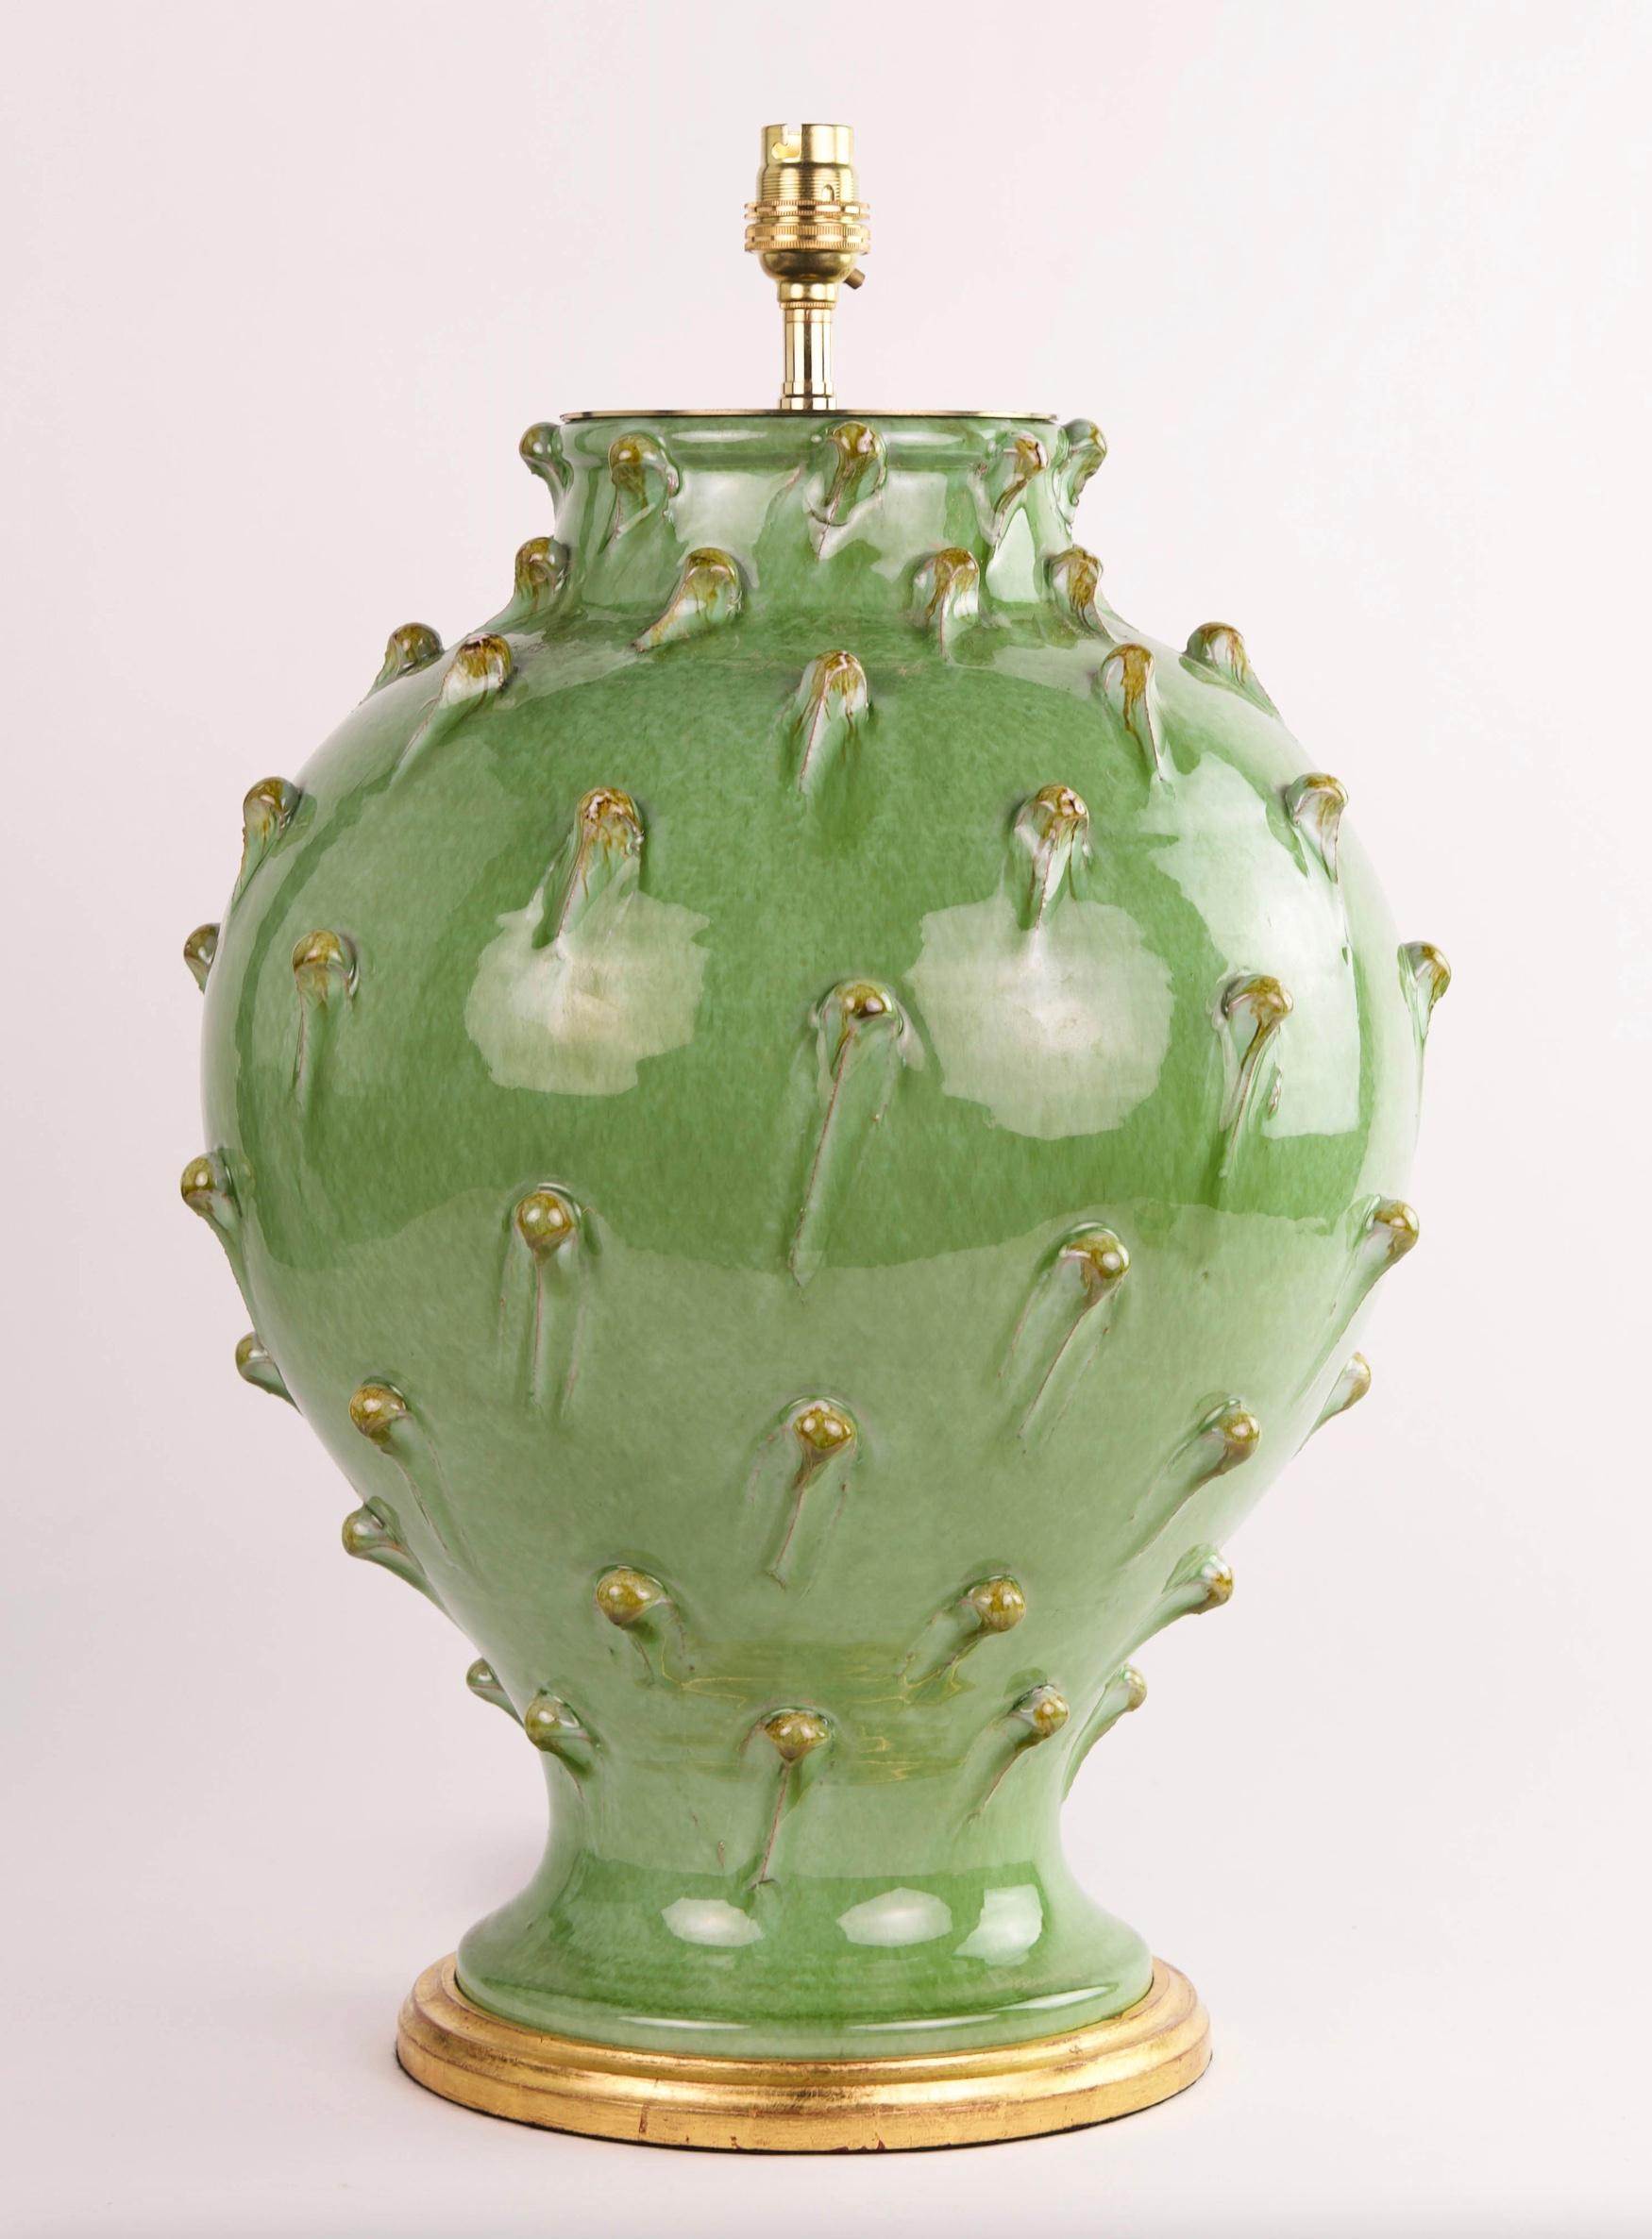 Magnifique lampe de table à glaçure verte du milieu du 20e siècle, de conception italienne. Elle est maintenant montée comme une lampe avec une base tournée dorée à la main.

Dimensions : Hauteur du vase : 42 cm (16 1/2 po), y compris la base en